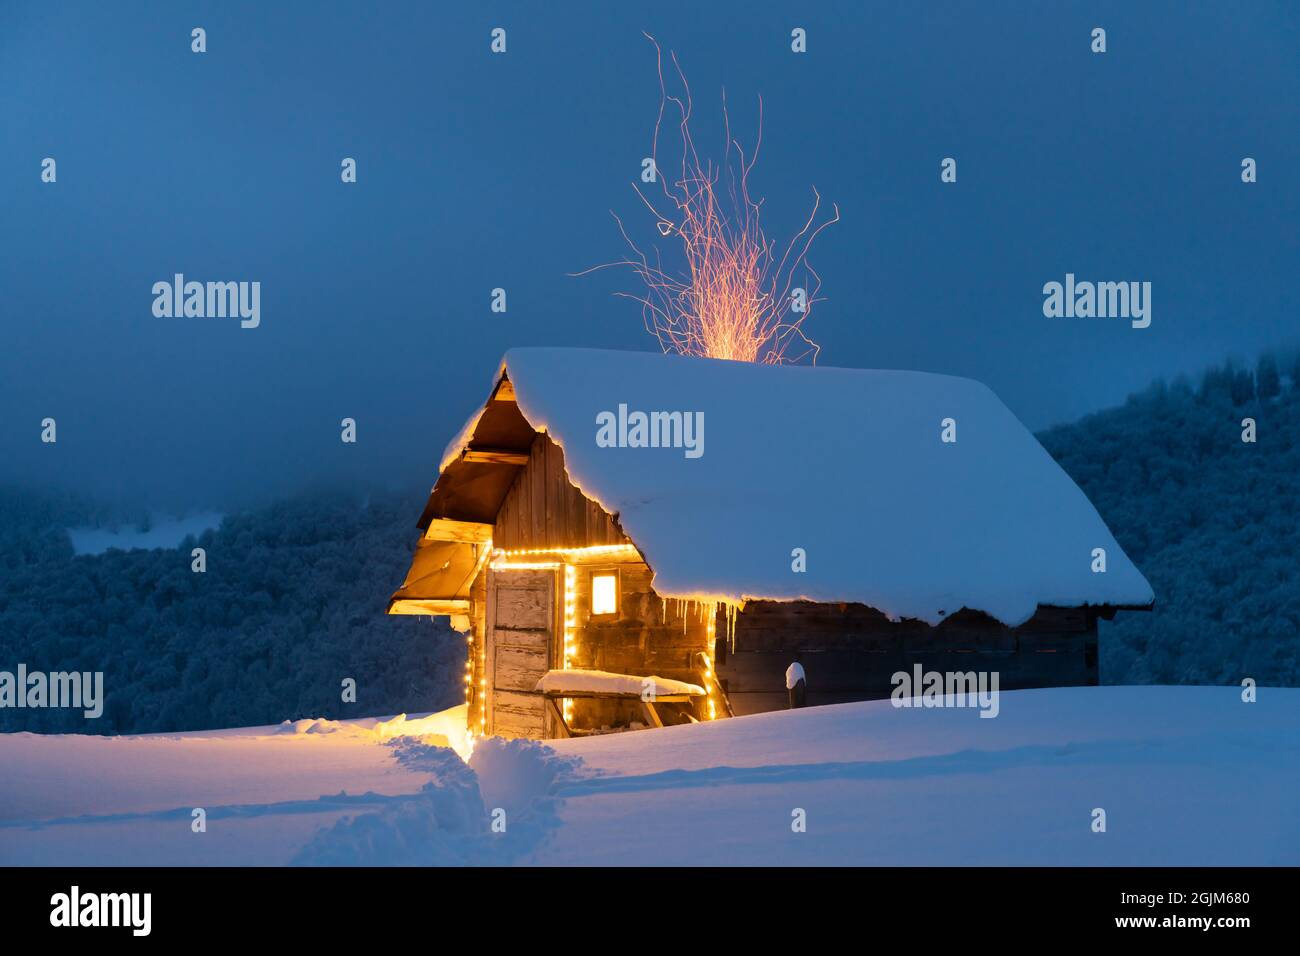 Paysage d'hiver fantastique avec cabine en bois lumineux dans une forêt enneigée. Des étincelles de feu sortent de la cheminée. Concept de vacances de Noël Banque D'Images